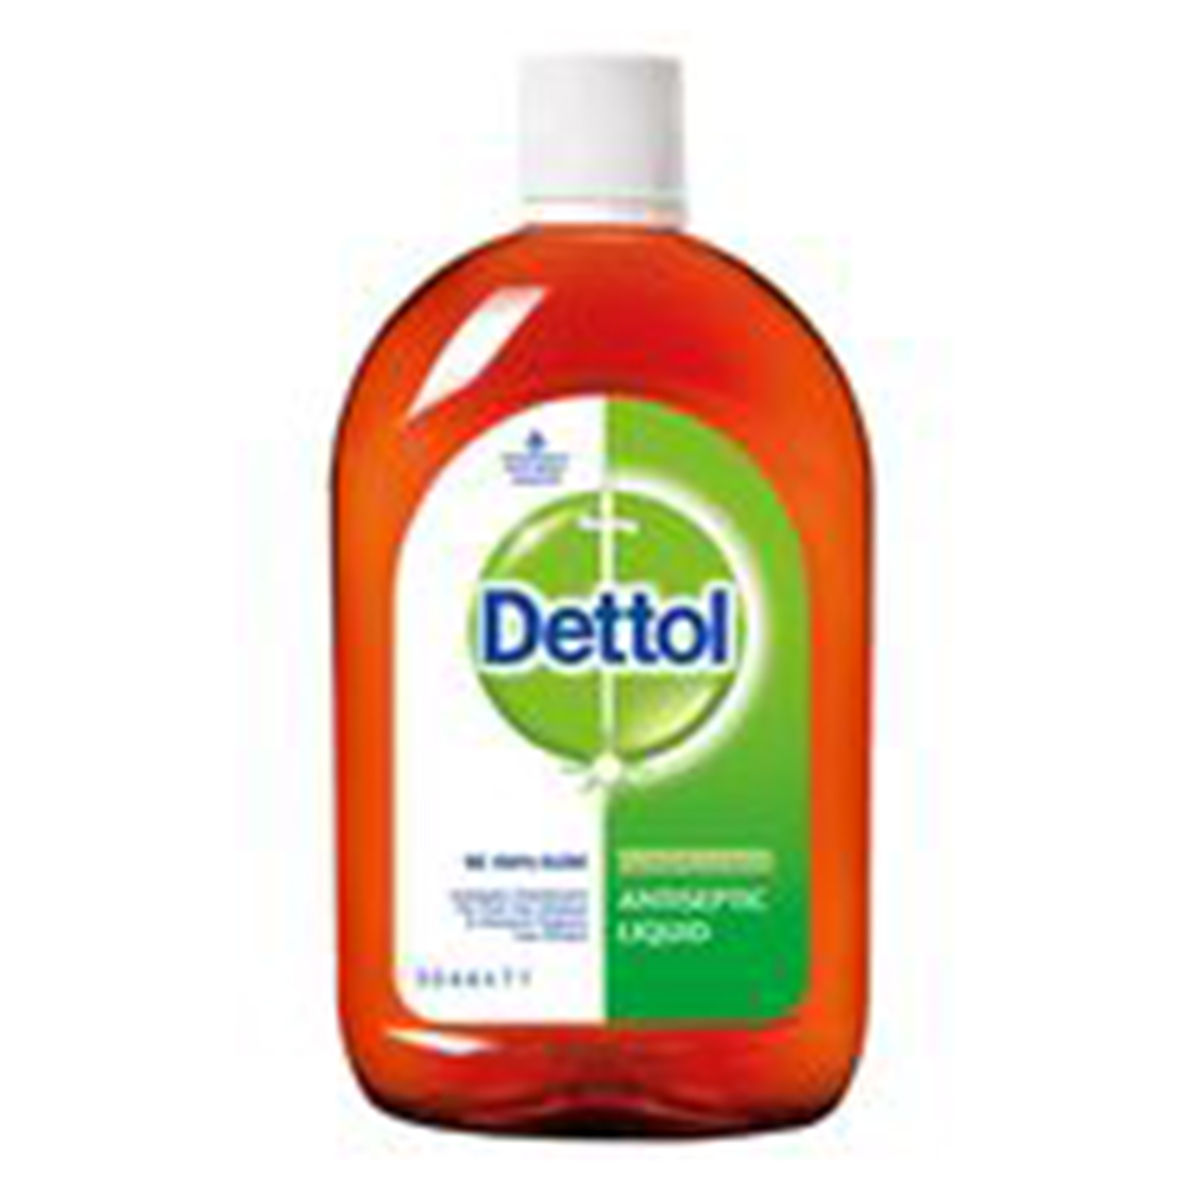 Buy Dettol Antiseptic Liquid, 60 ml Online